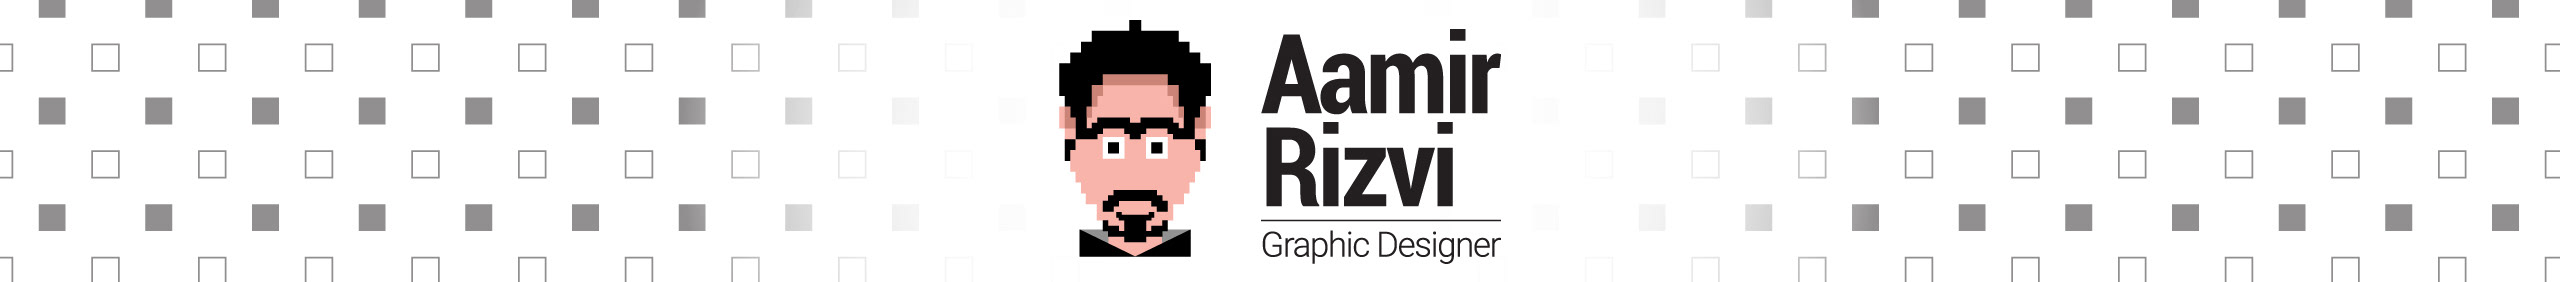 Profil-Banner von Aamir Rizvi